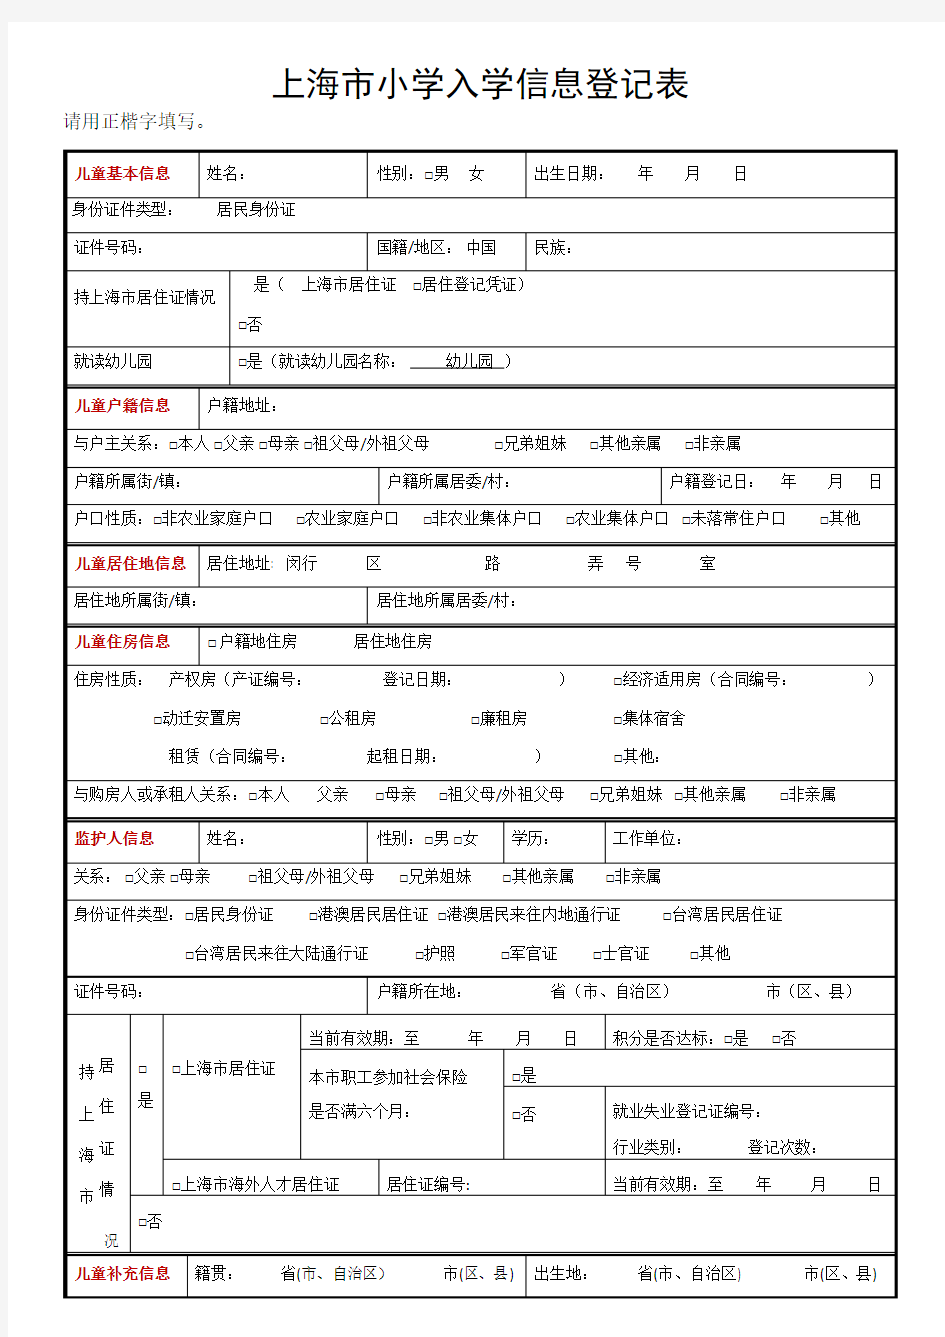 上海市小学入学信息登记表(草表)